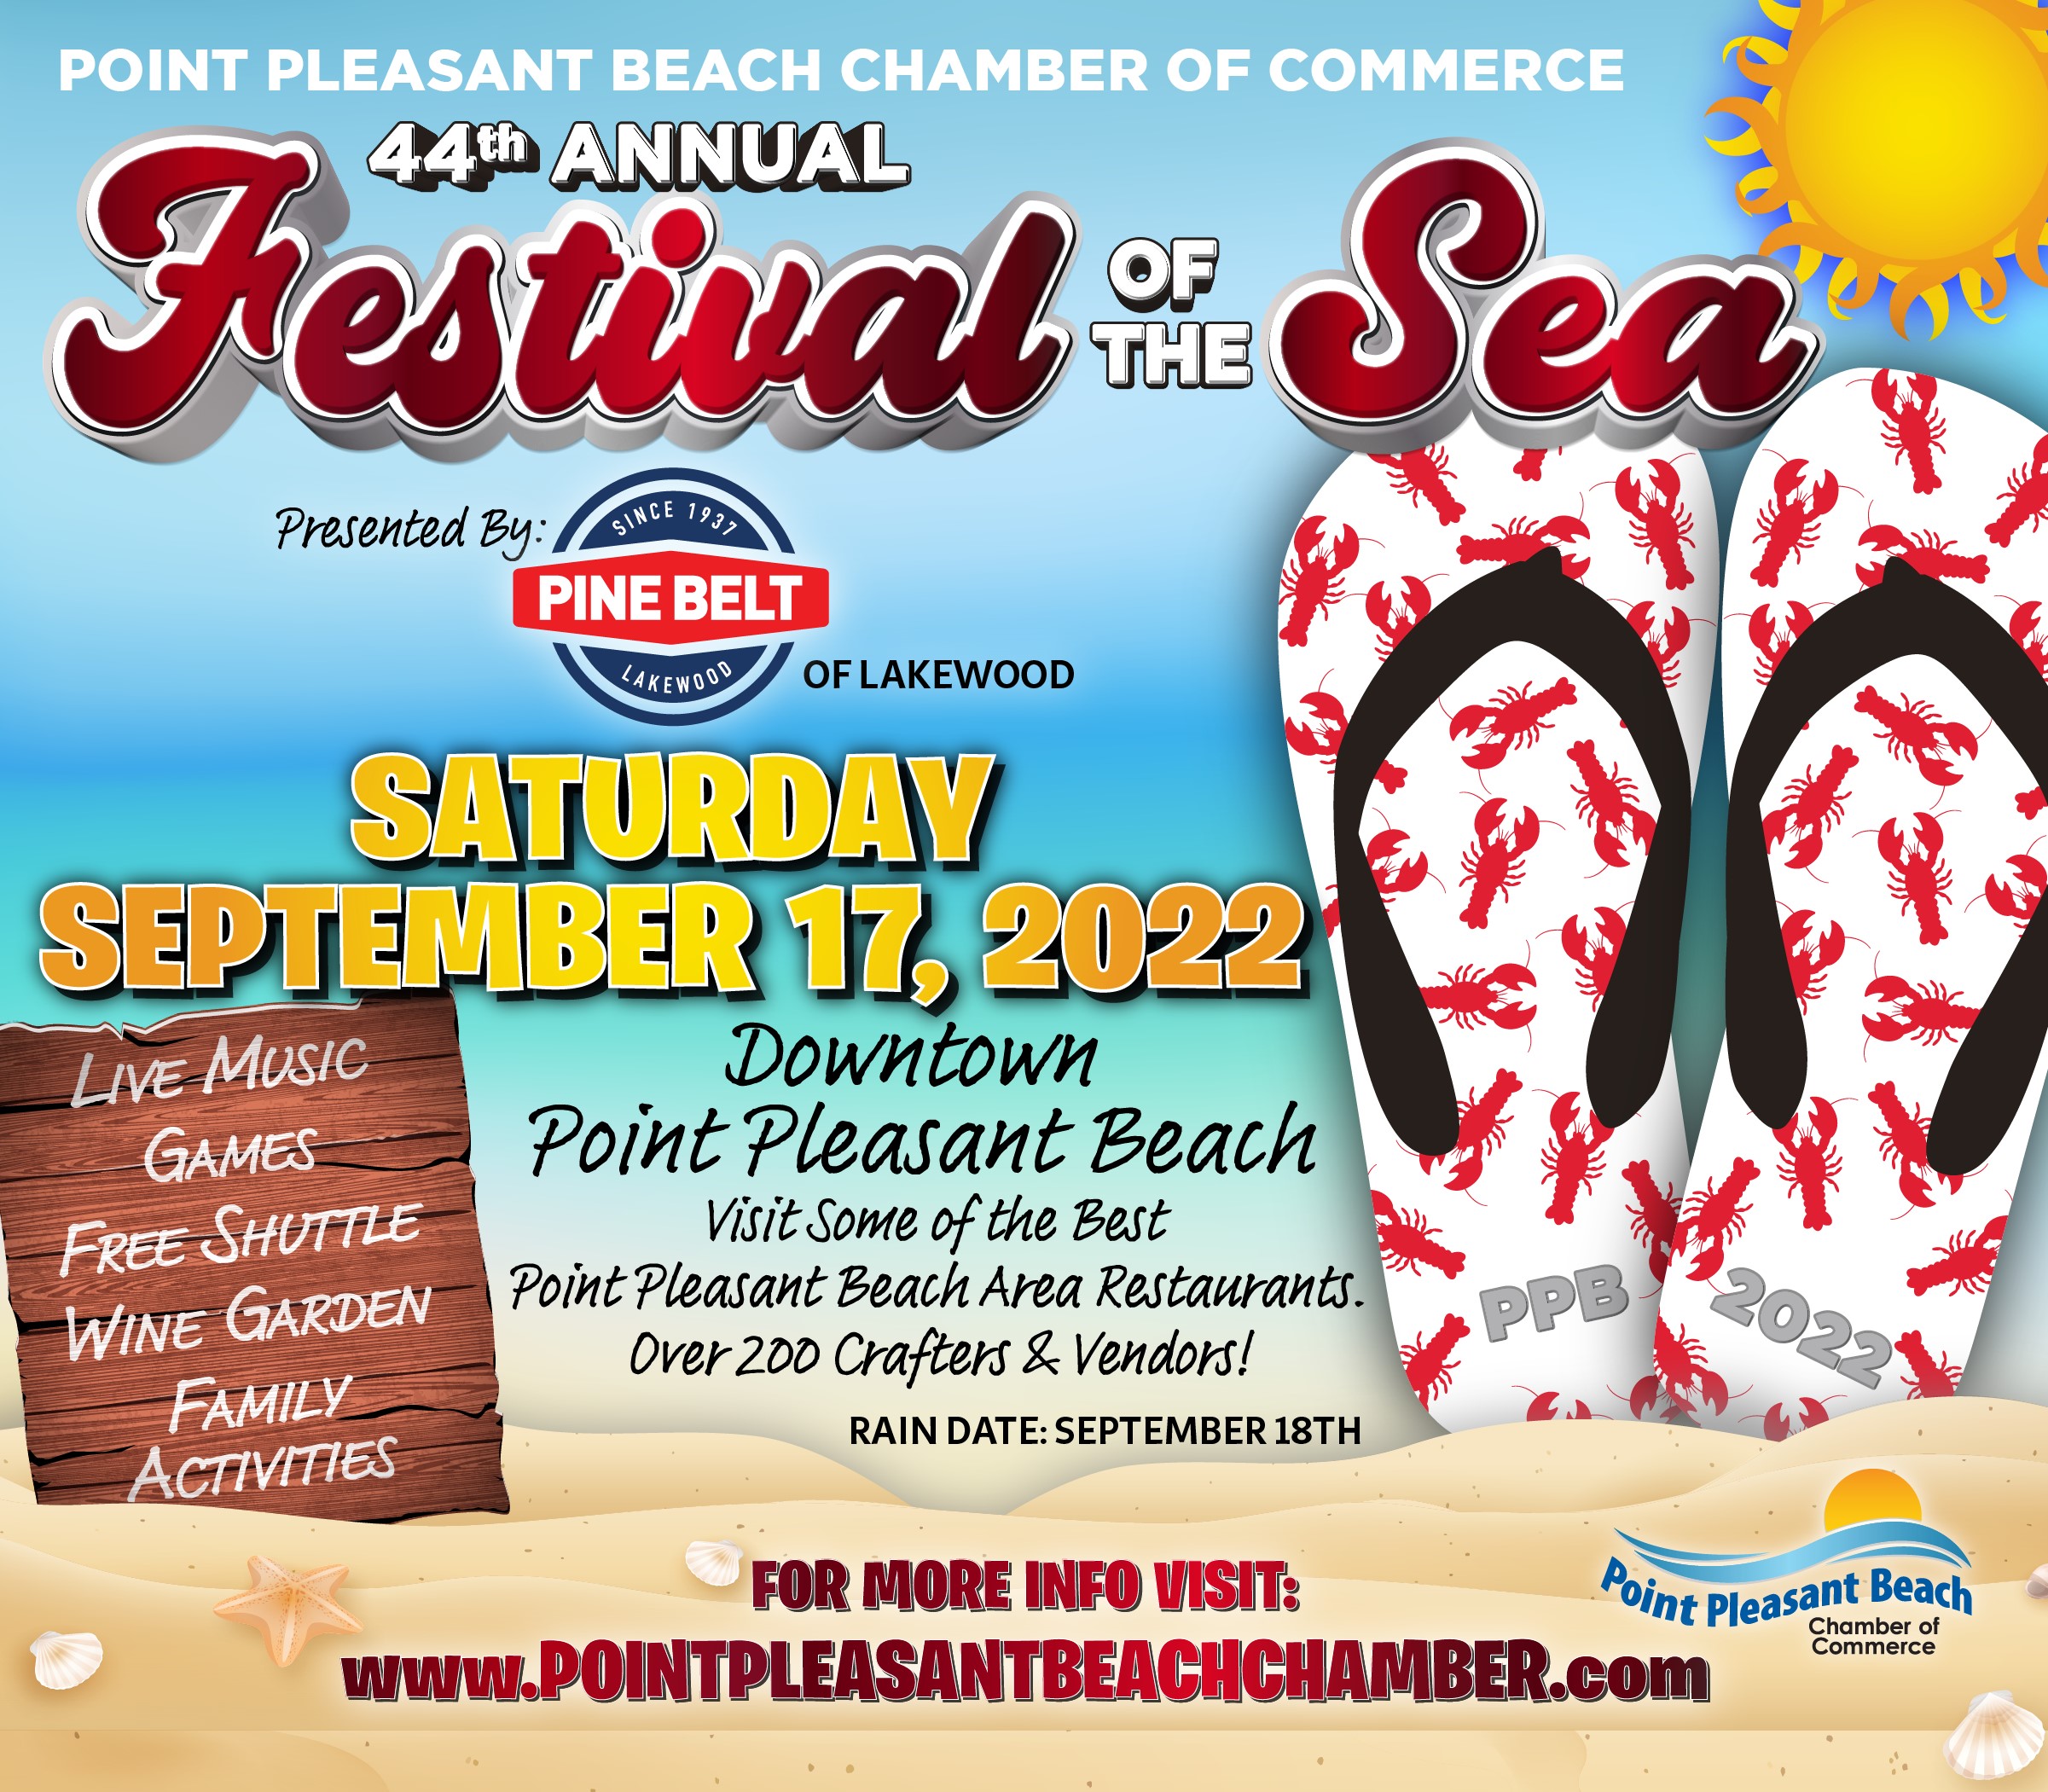 44th Annual Festival of the Sea